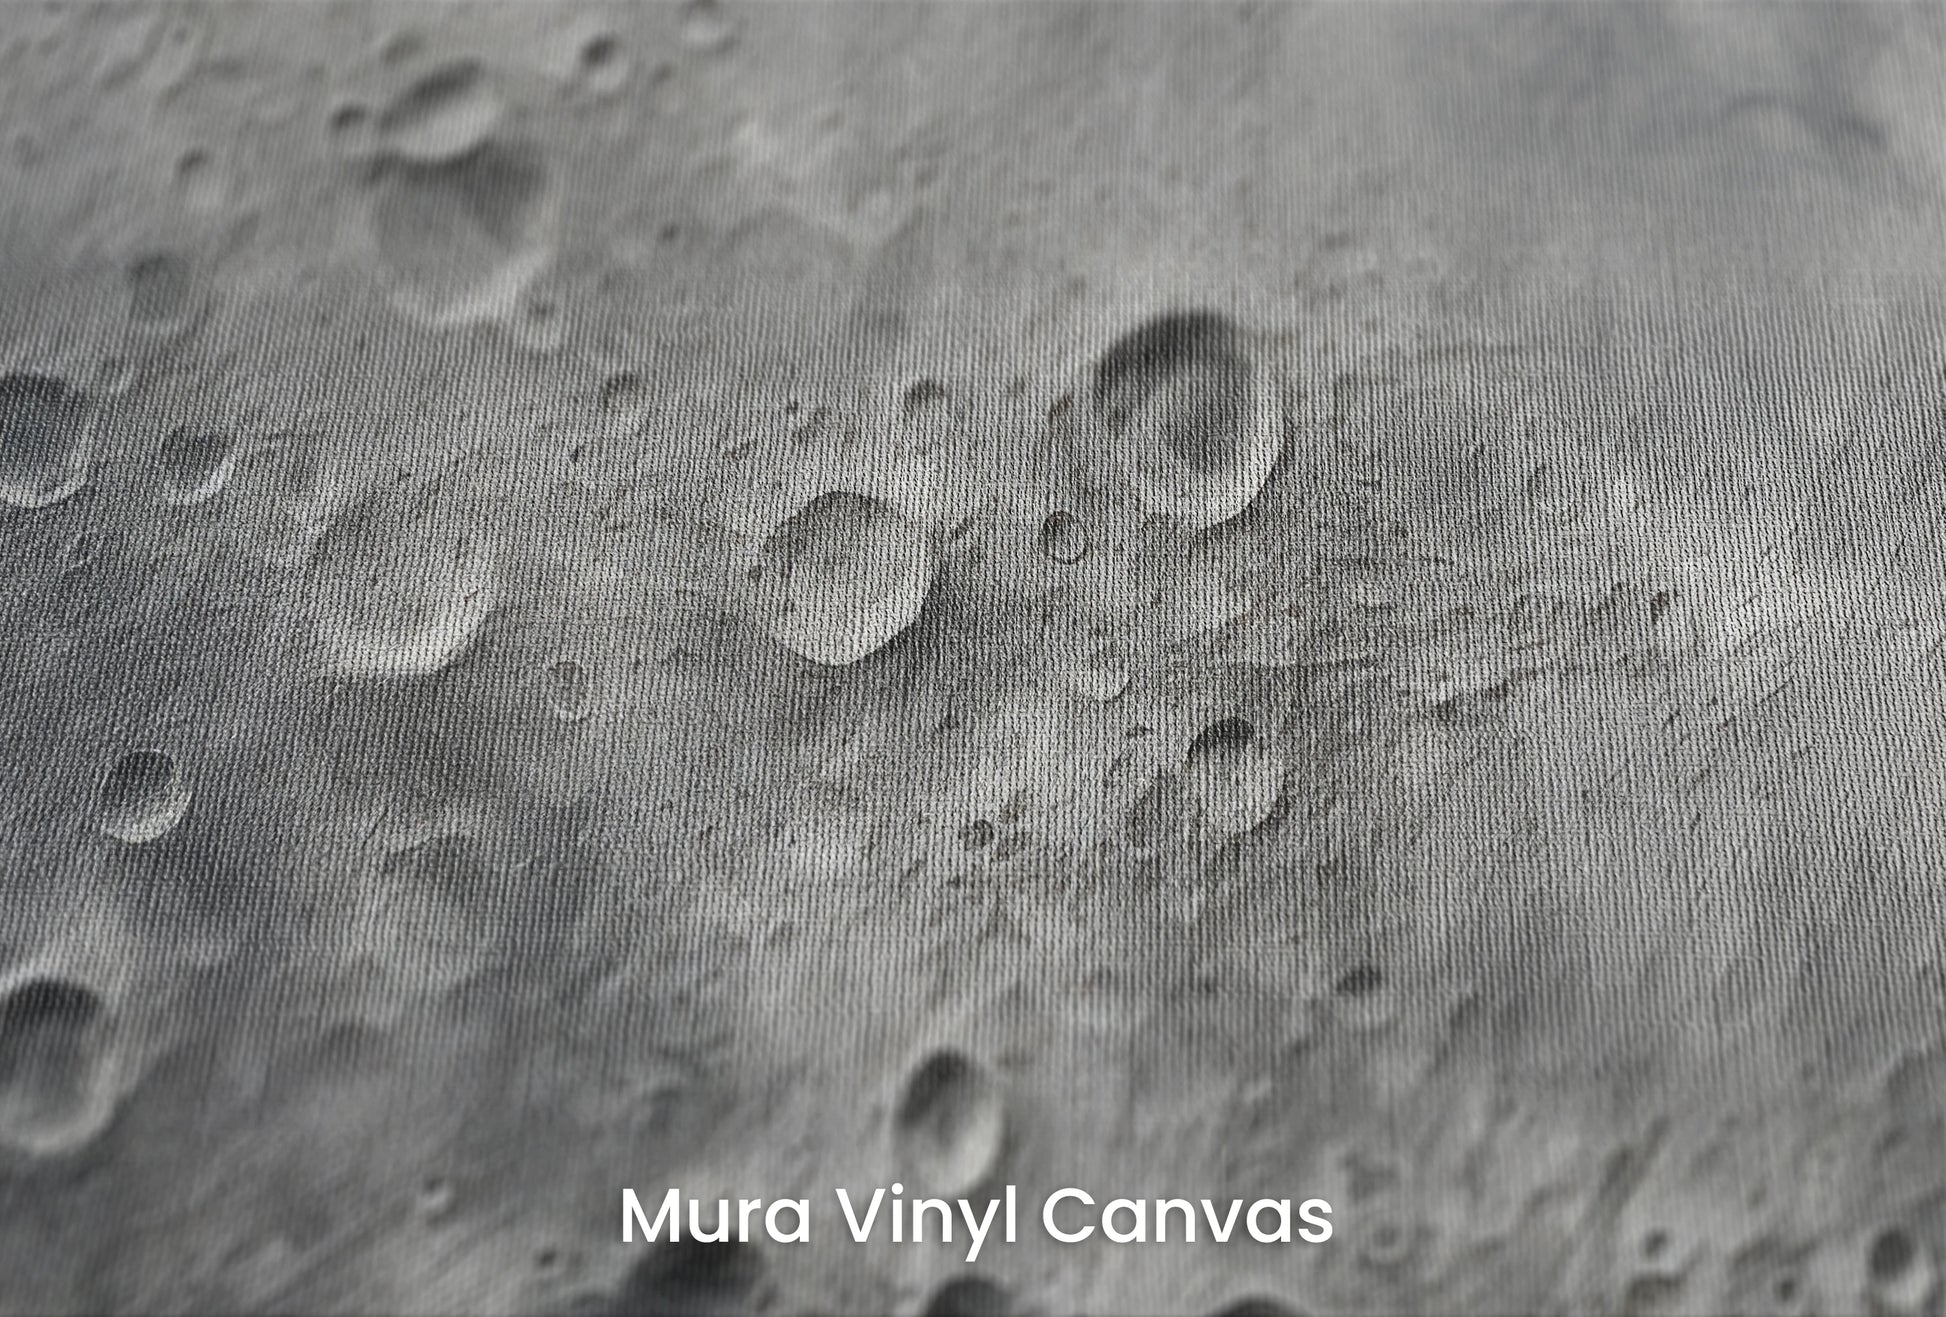 Zbliżenie na artystyczną fototapetę o nazwie Moon's Monochrome 2 na podłożu Mura Vinyl Canvas - faktura naturalnego płótna.